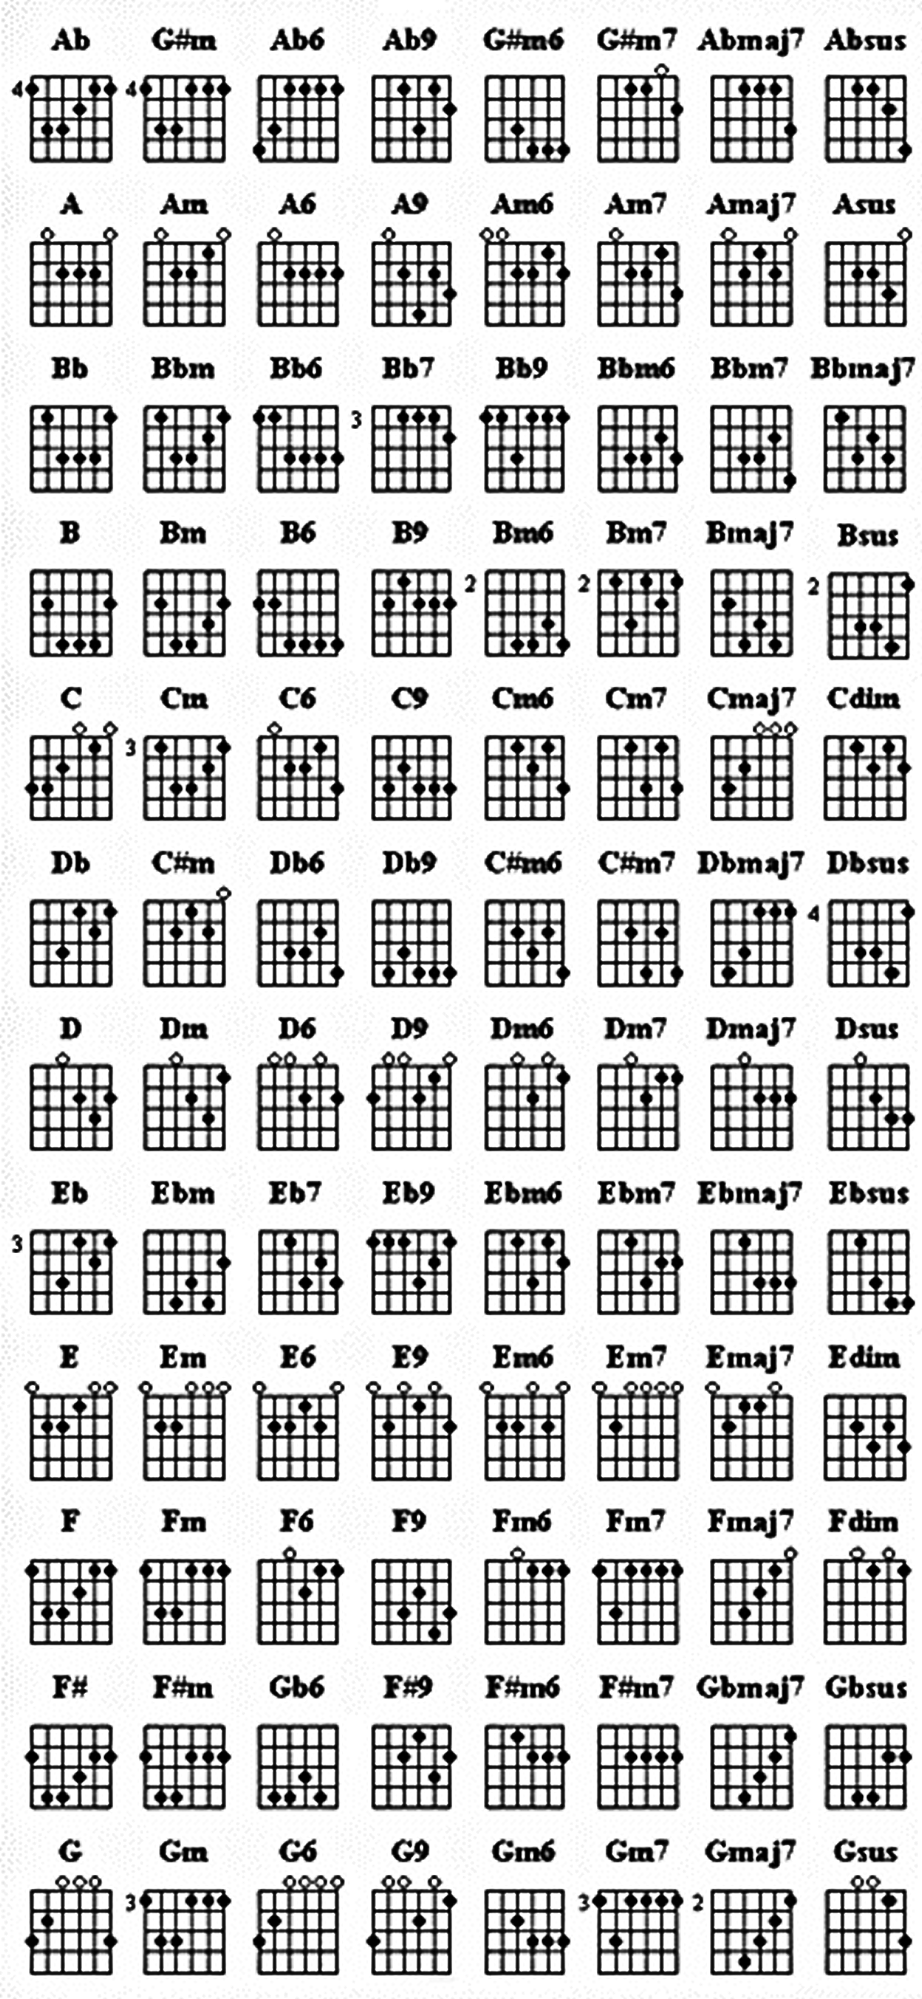 E2 Chord Guitar